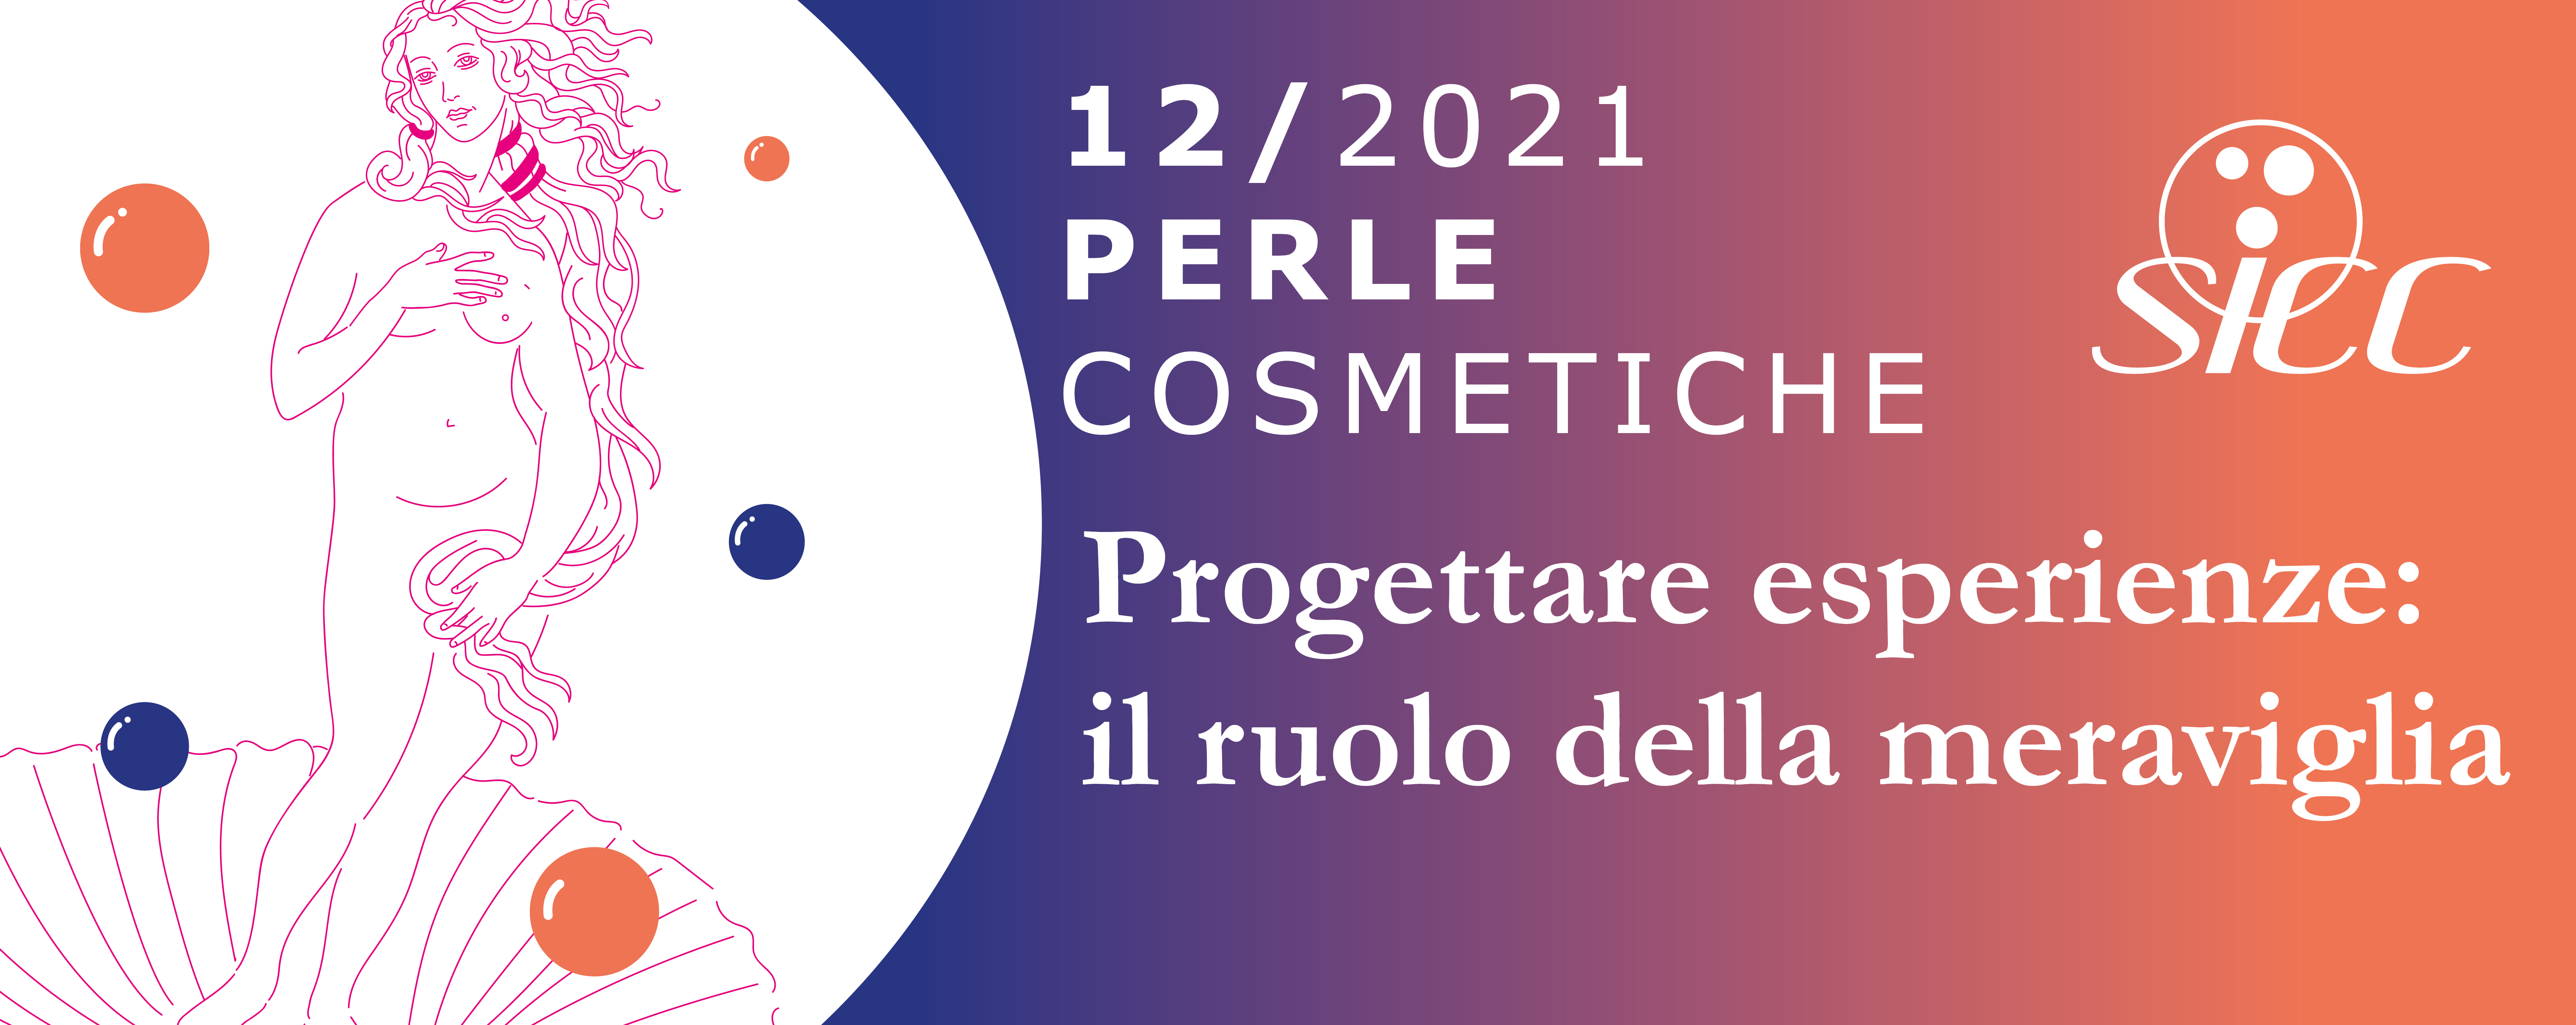 Perle Cosmetiche N. 12/21: Progettare esperienze - Il ruolo della meraviglia